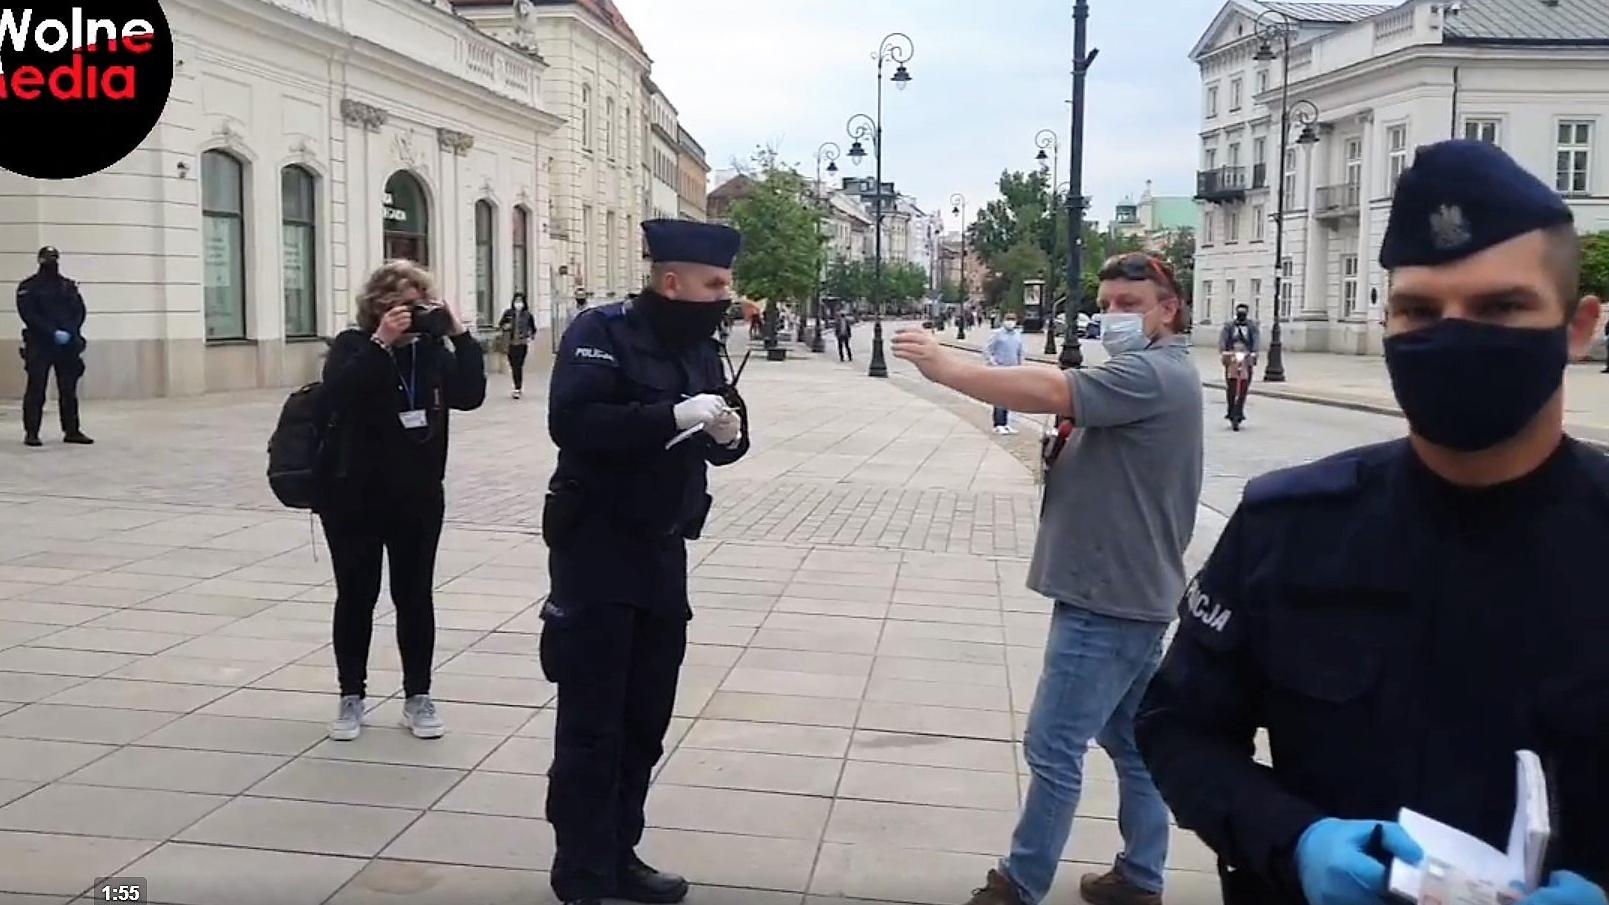 Katarzyna Pierzchała fotografuje akcję policji